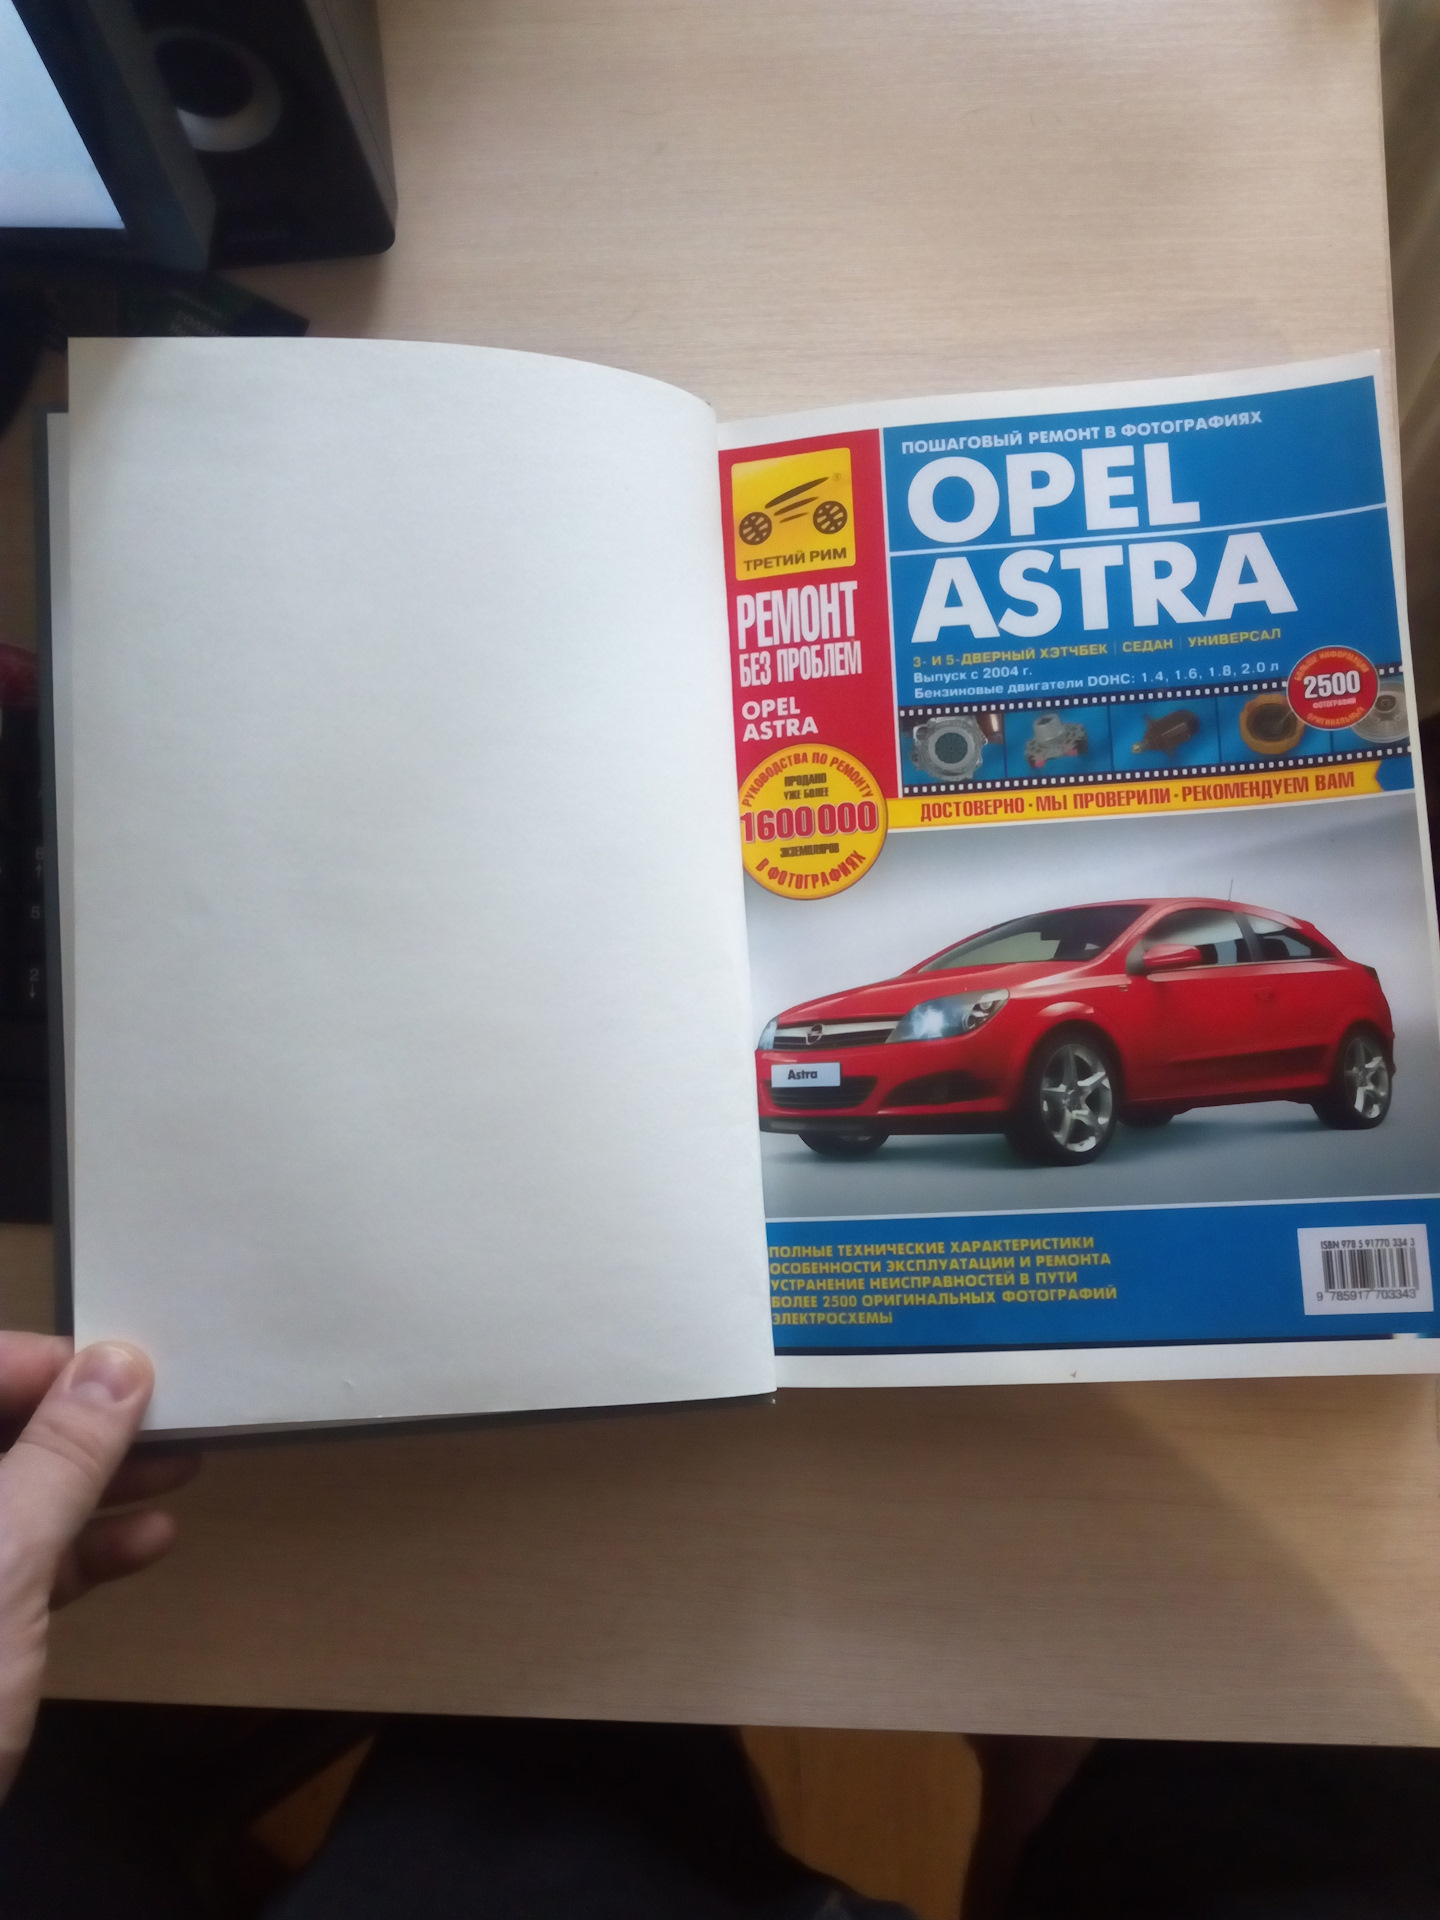 Opel Astra J (с 2009 г.). Эксплуатация, обслуживание, ремонт. Иллюстрированное практическое пособие